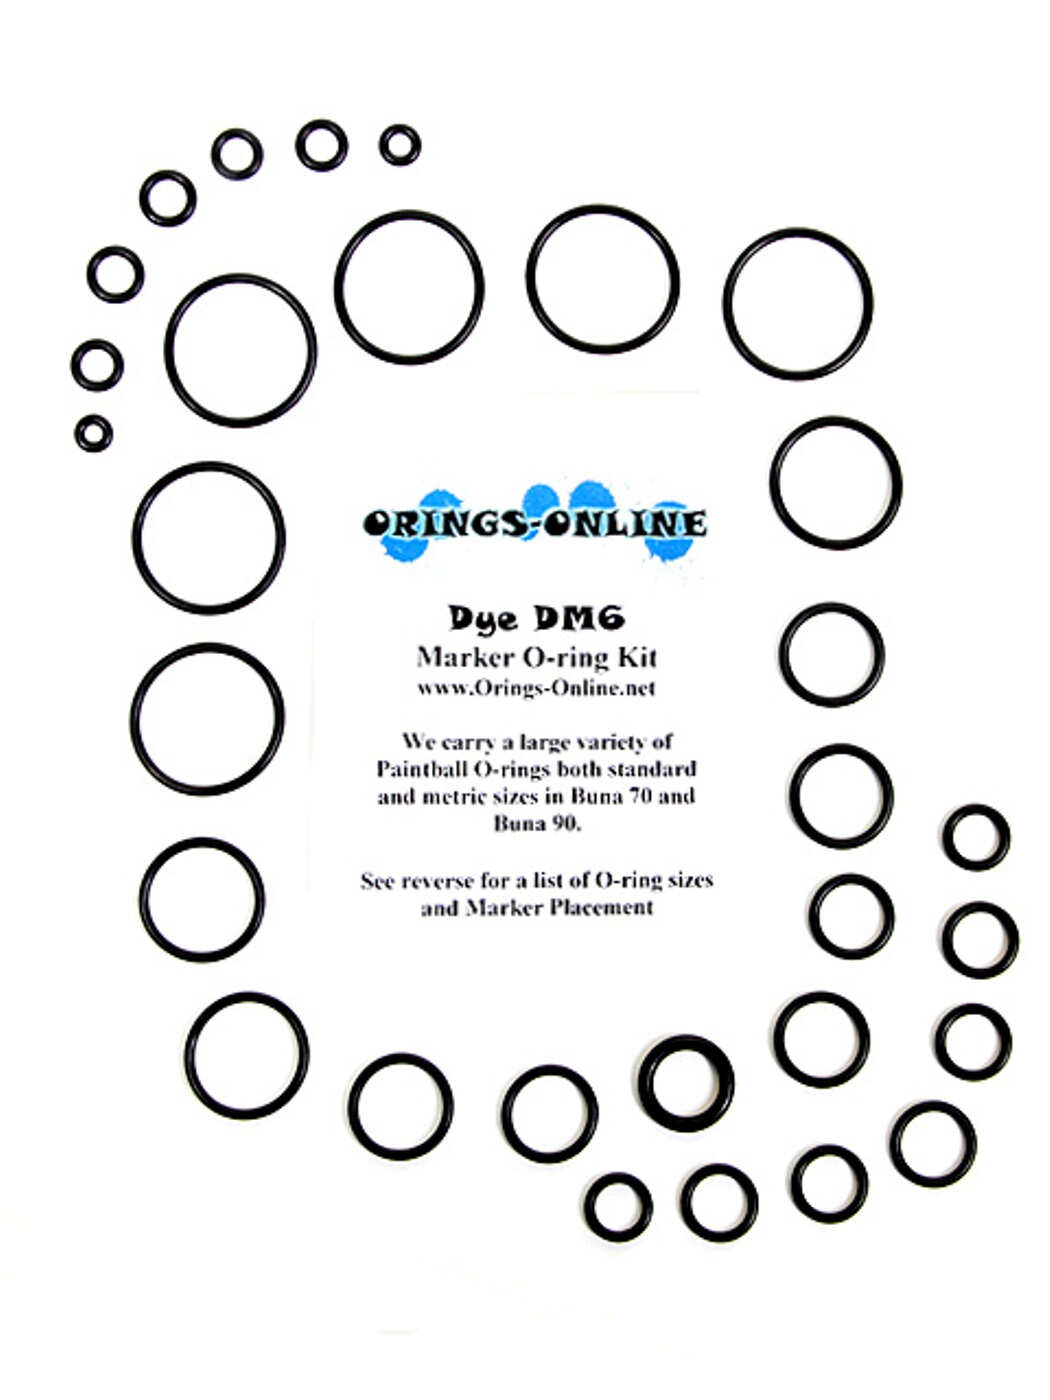 Dye DM5 Paintball Marker O-ring Oring Kit x 4 rebuilds kits 